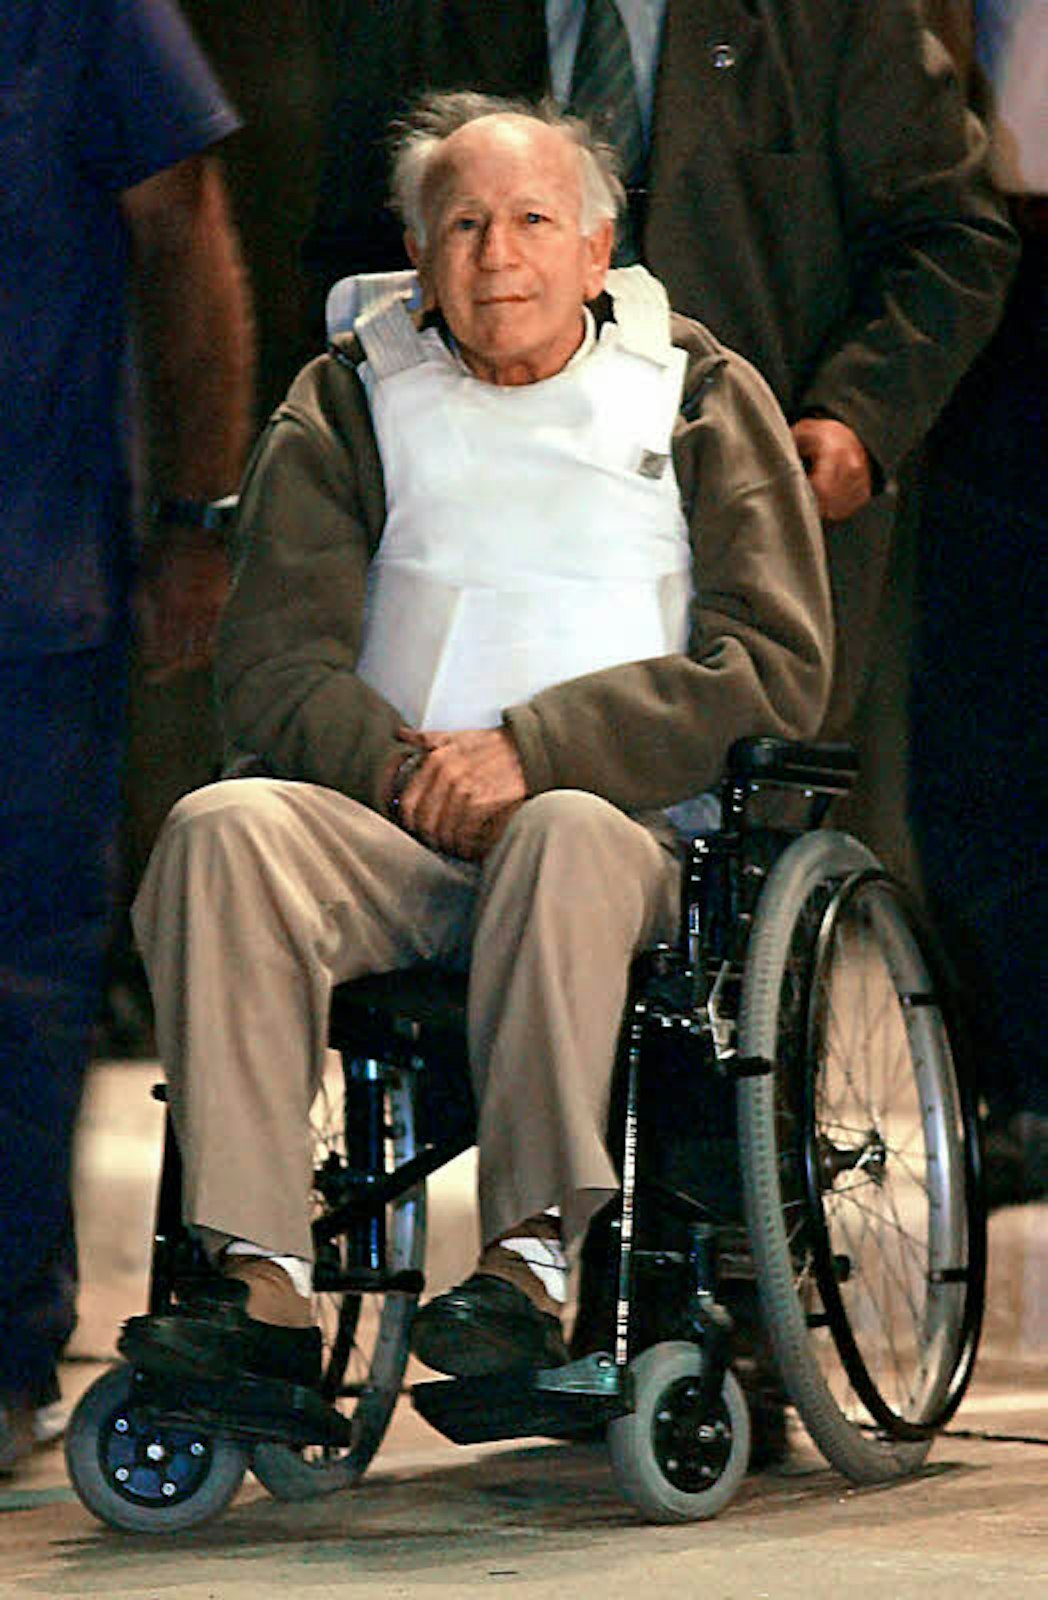 Der Sektenführer Paul Schäfer nach seiner Festnahme in Argentinien 2006